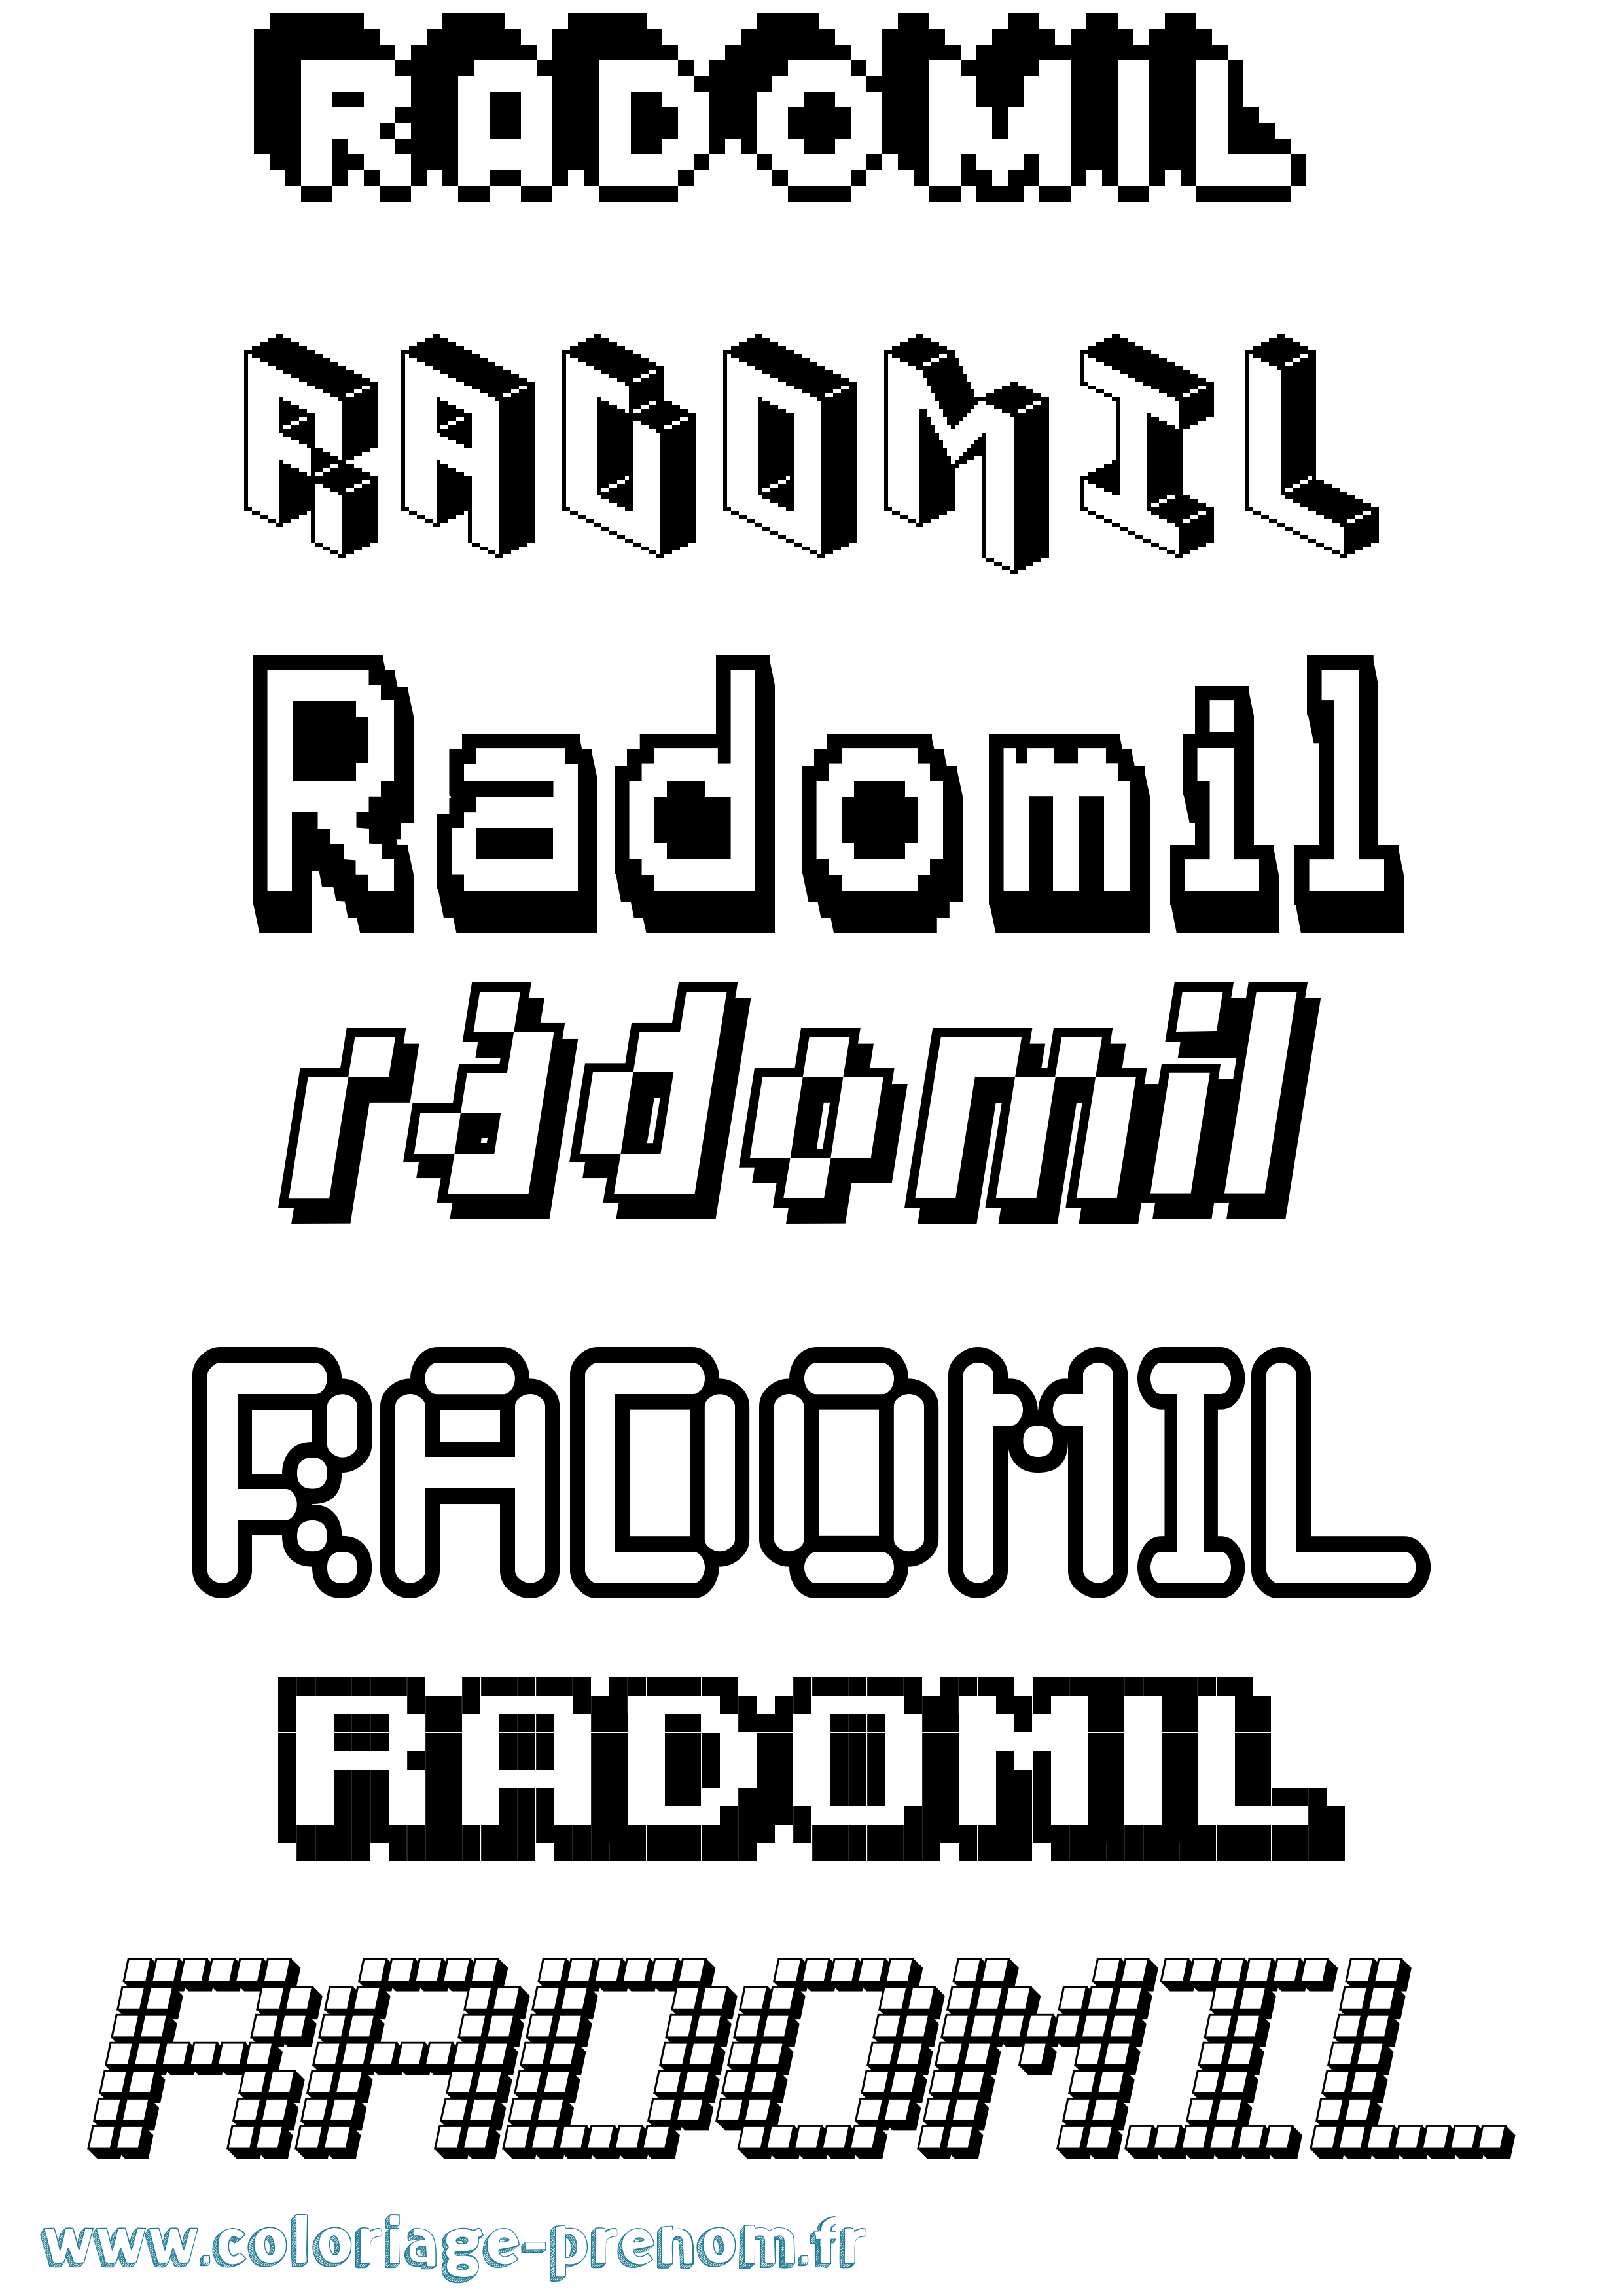 Coloriage prénom Radomil Pixel